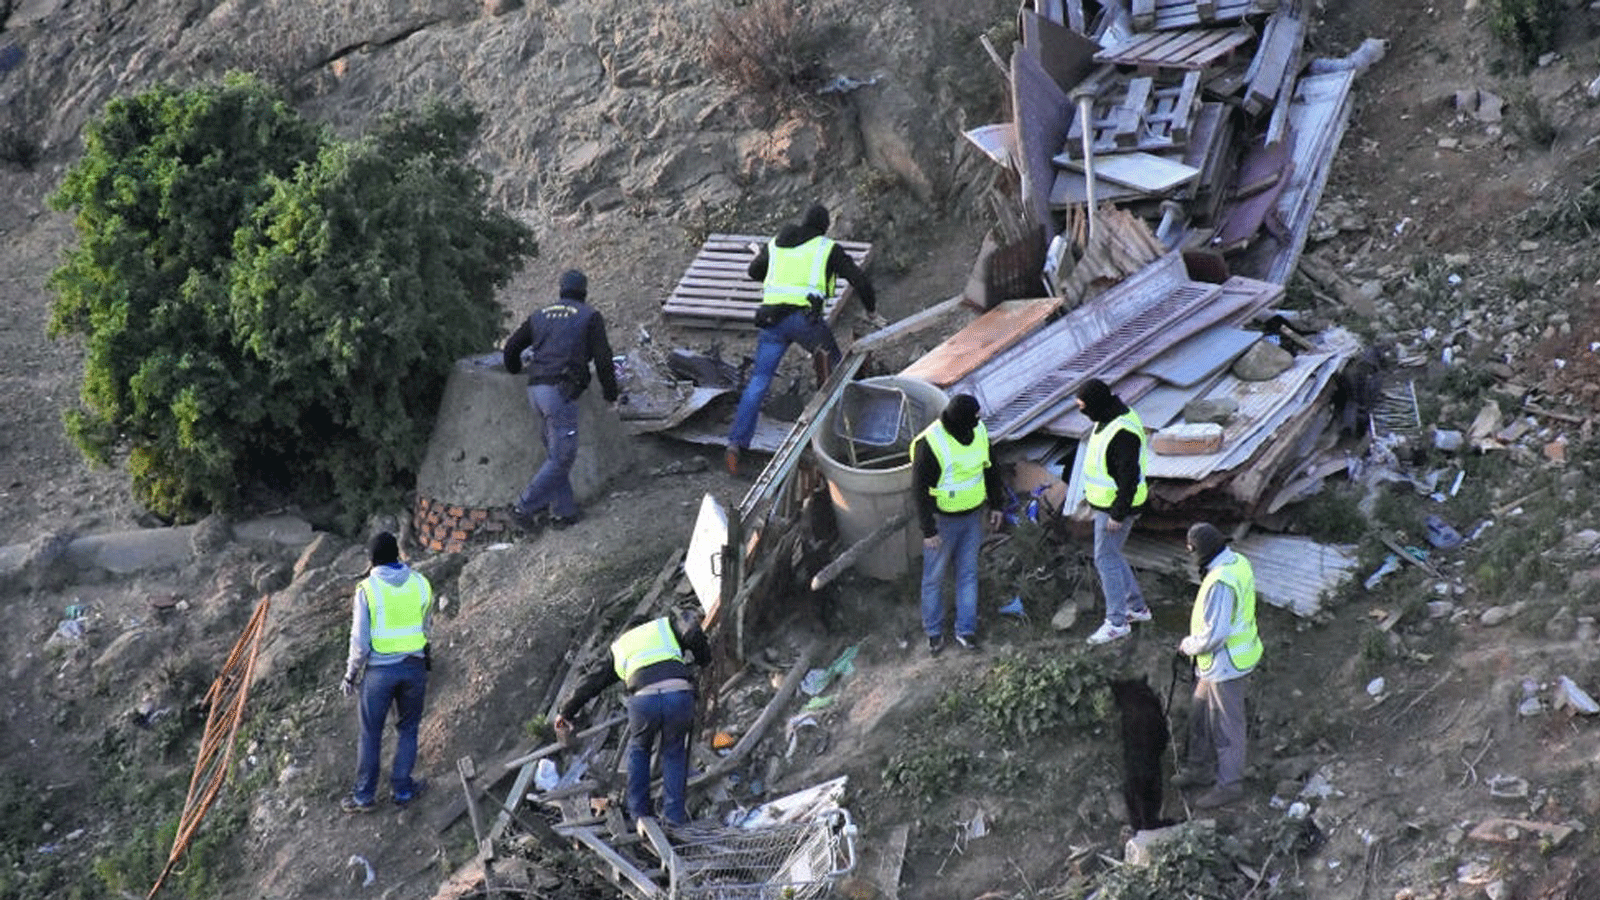 رجال ملثمون من الحرس المدني الإسباني يقومون بعمليات تفتيش في قطعة أرض خالية بعد اعتقال اثنين من الجهاديين المشتبه بهم، في جيب سبتة بشمال أفريقيا. في 13 يناير / كانون الثاني 2017